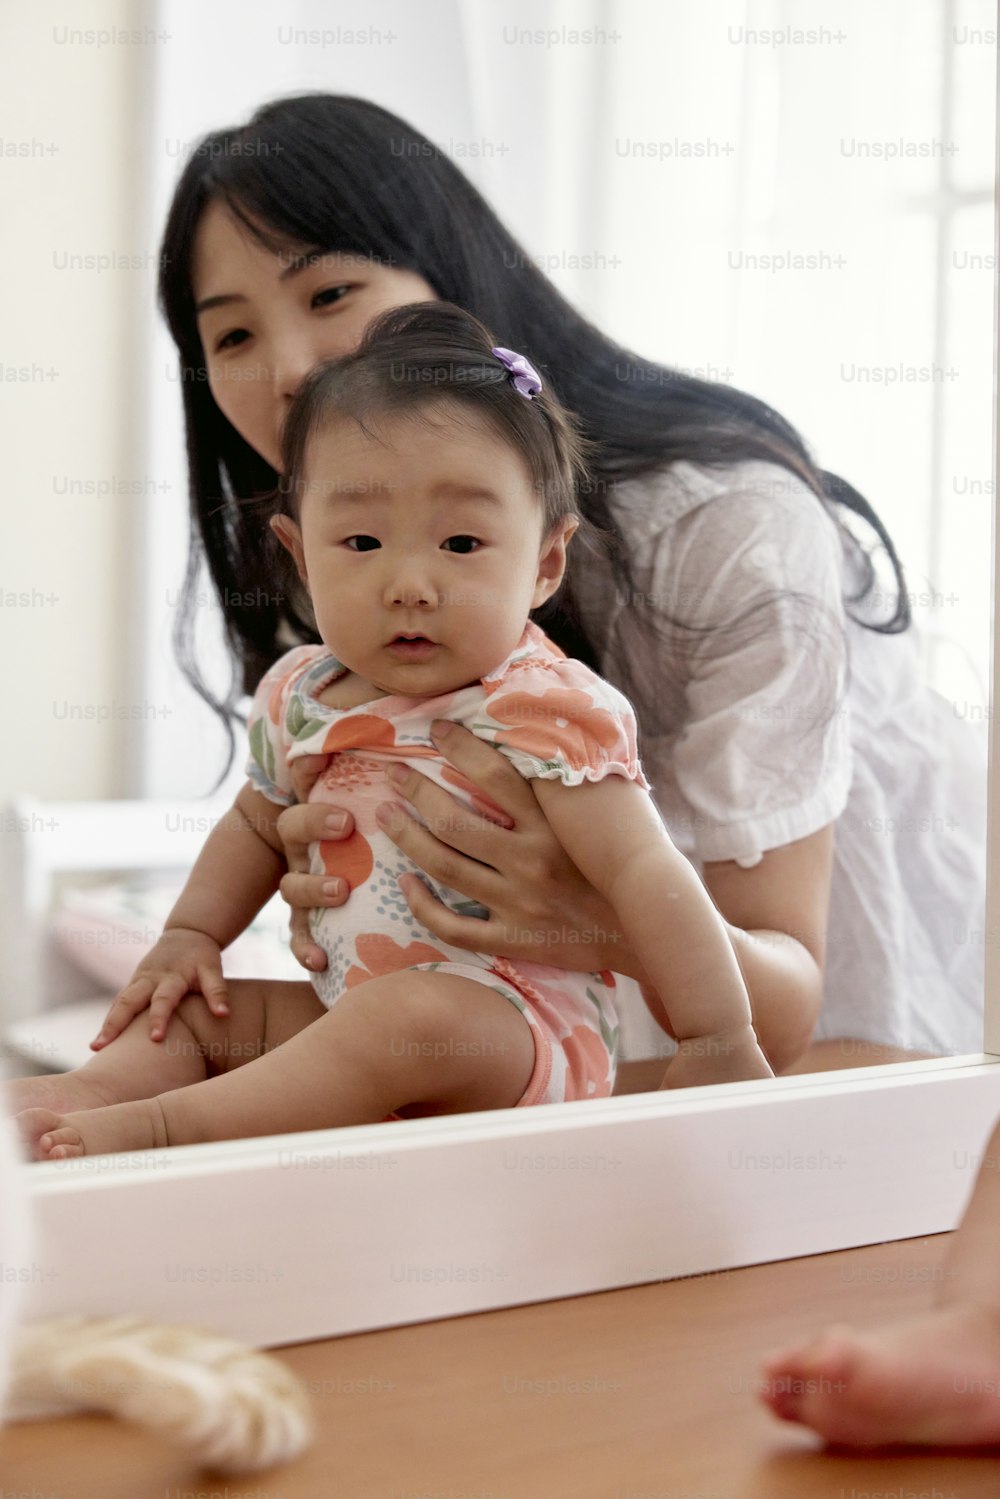 una mujer sosteniendo a un bebé frente a un espejo